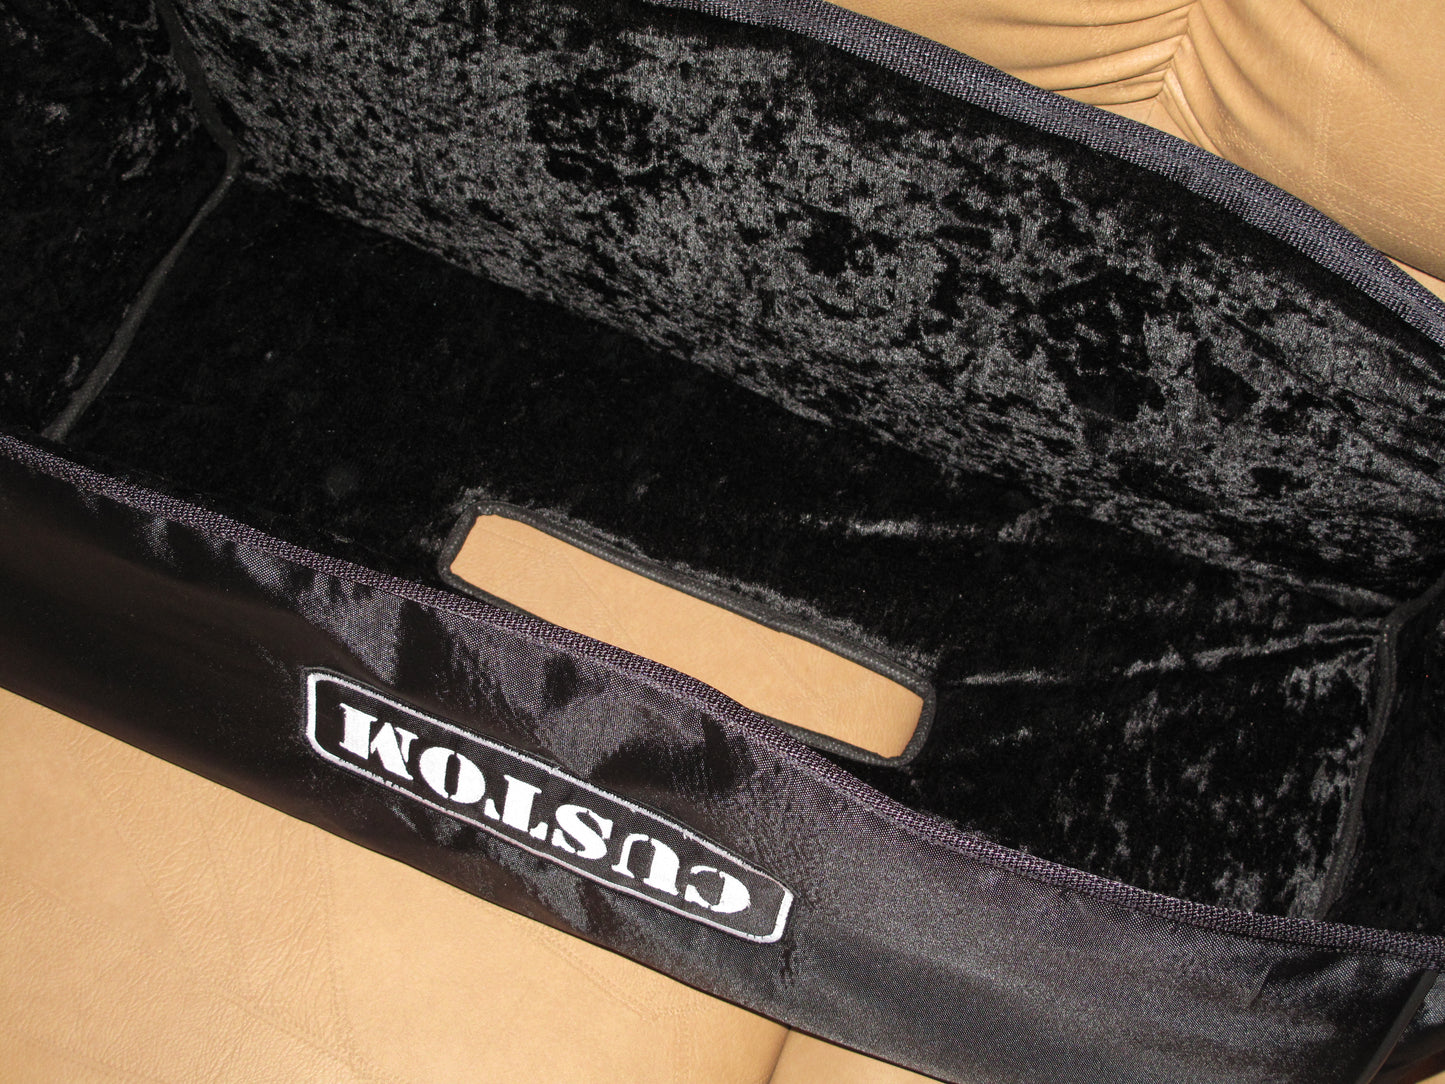 Custom padded cover for KUSTOM DOUBLE CROSS head amp